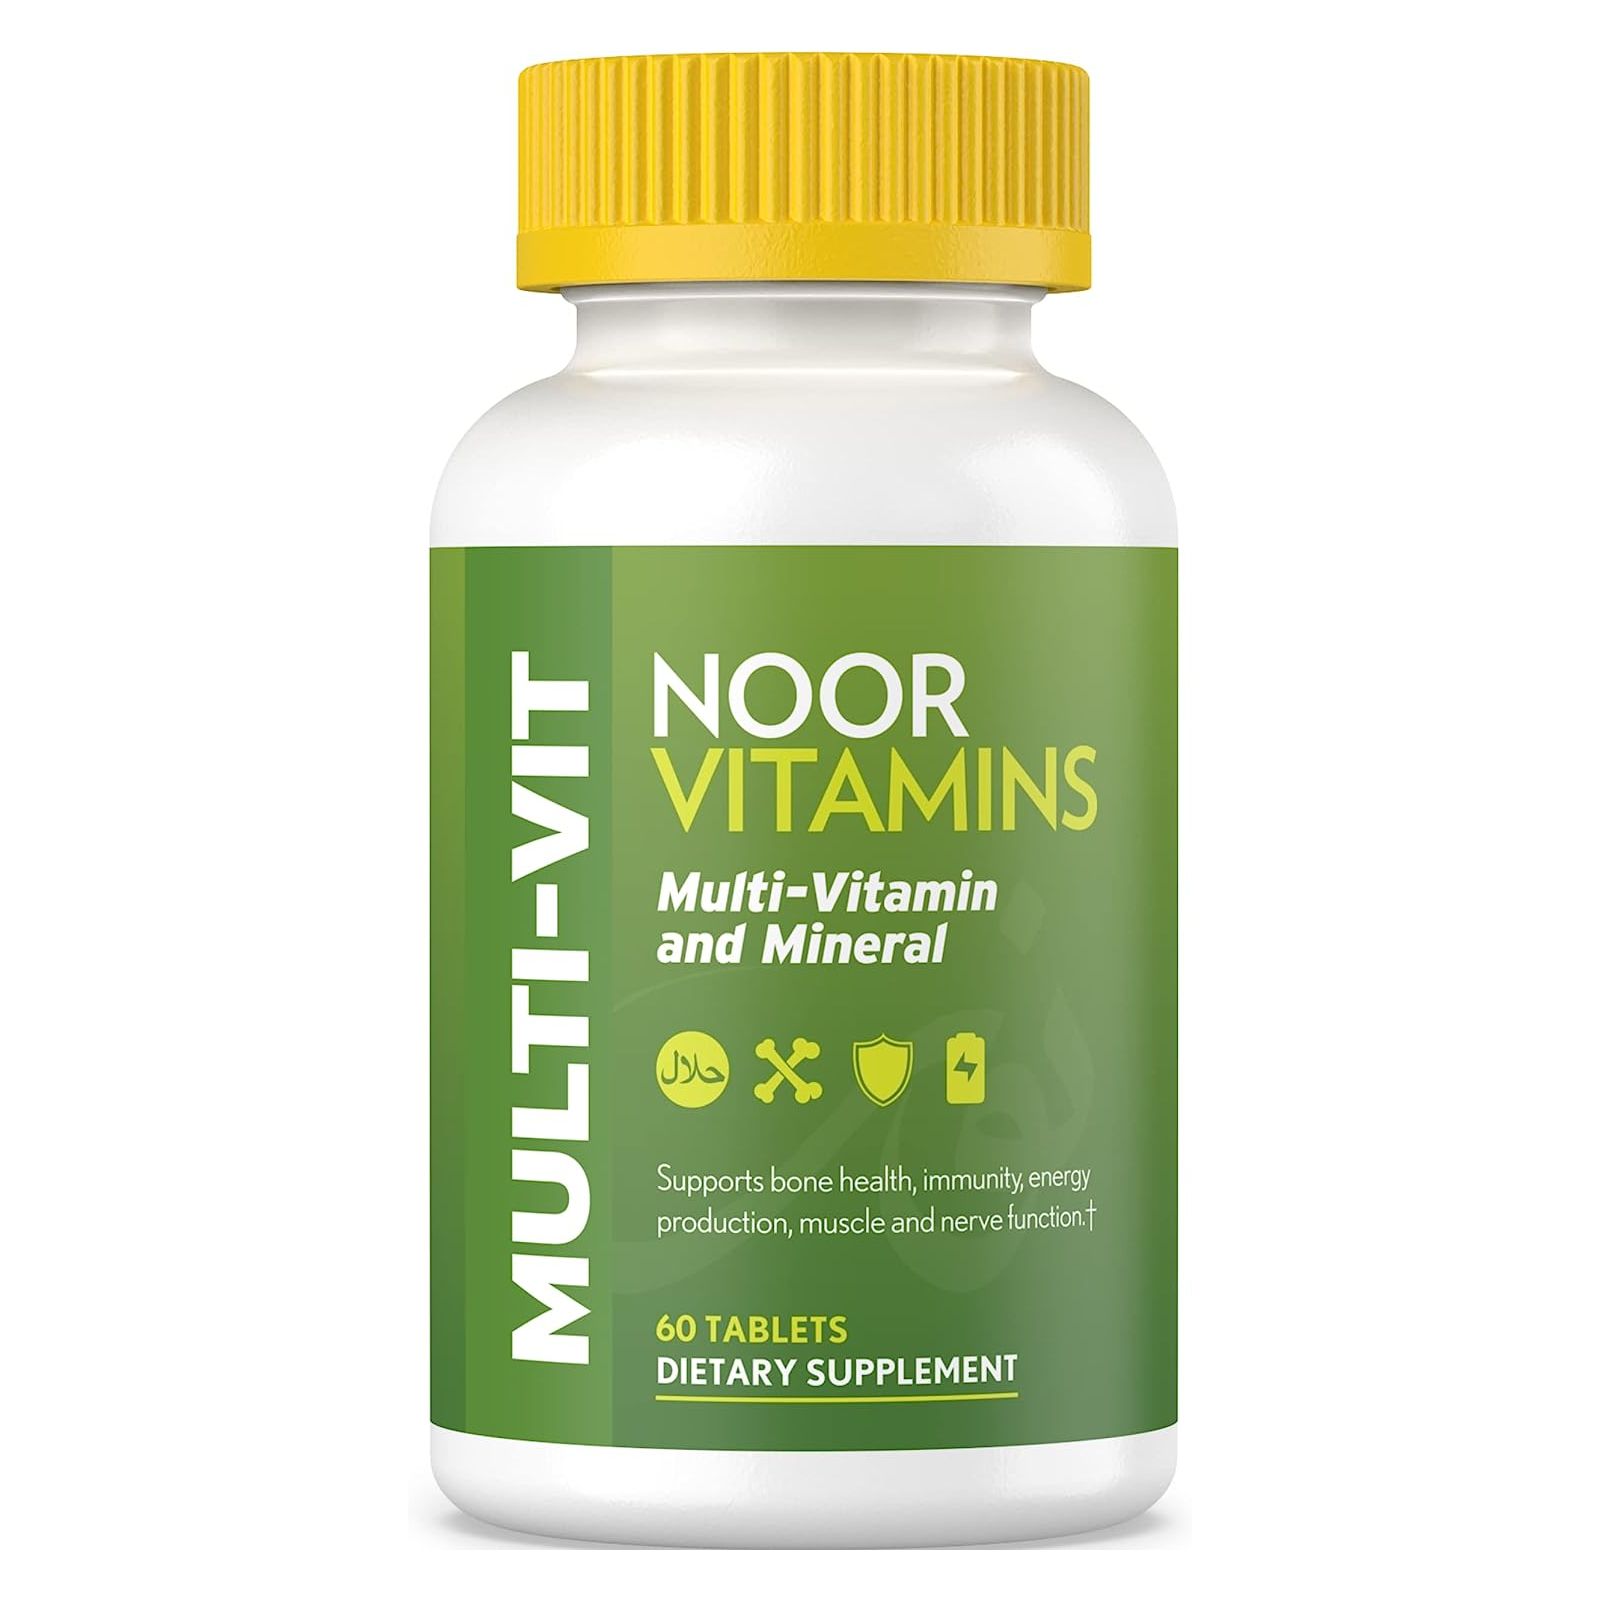 Мультивитамины Noor Vitamins Halal Daily, 60 таблеток schiff neuriva brain performance с витаминами b6 b12 и фолиевой кислотой клубника 50 жевательных таблеток